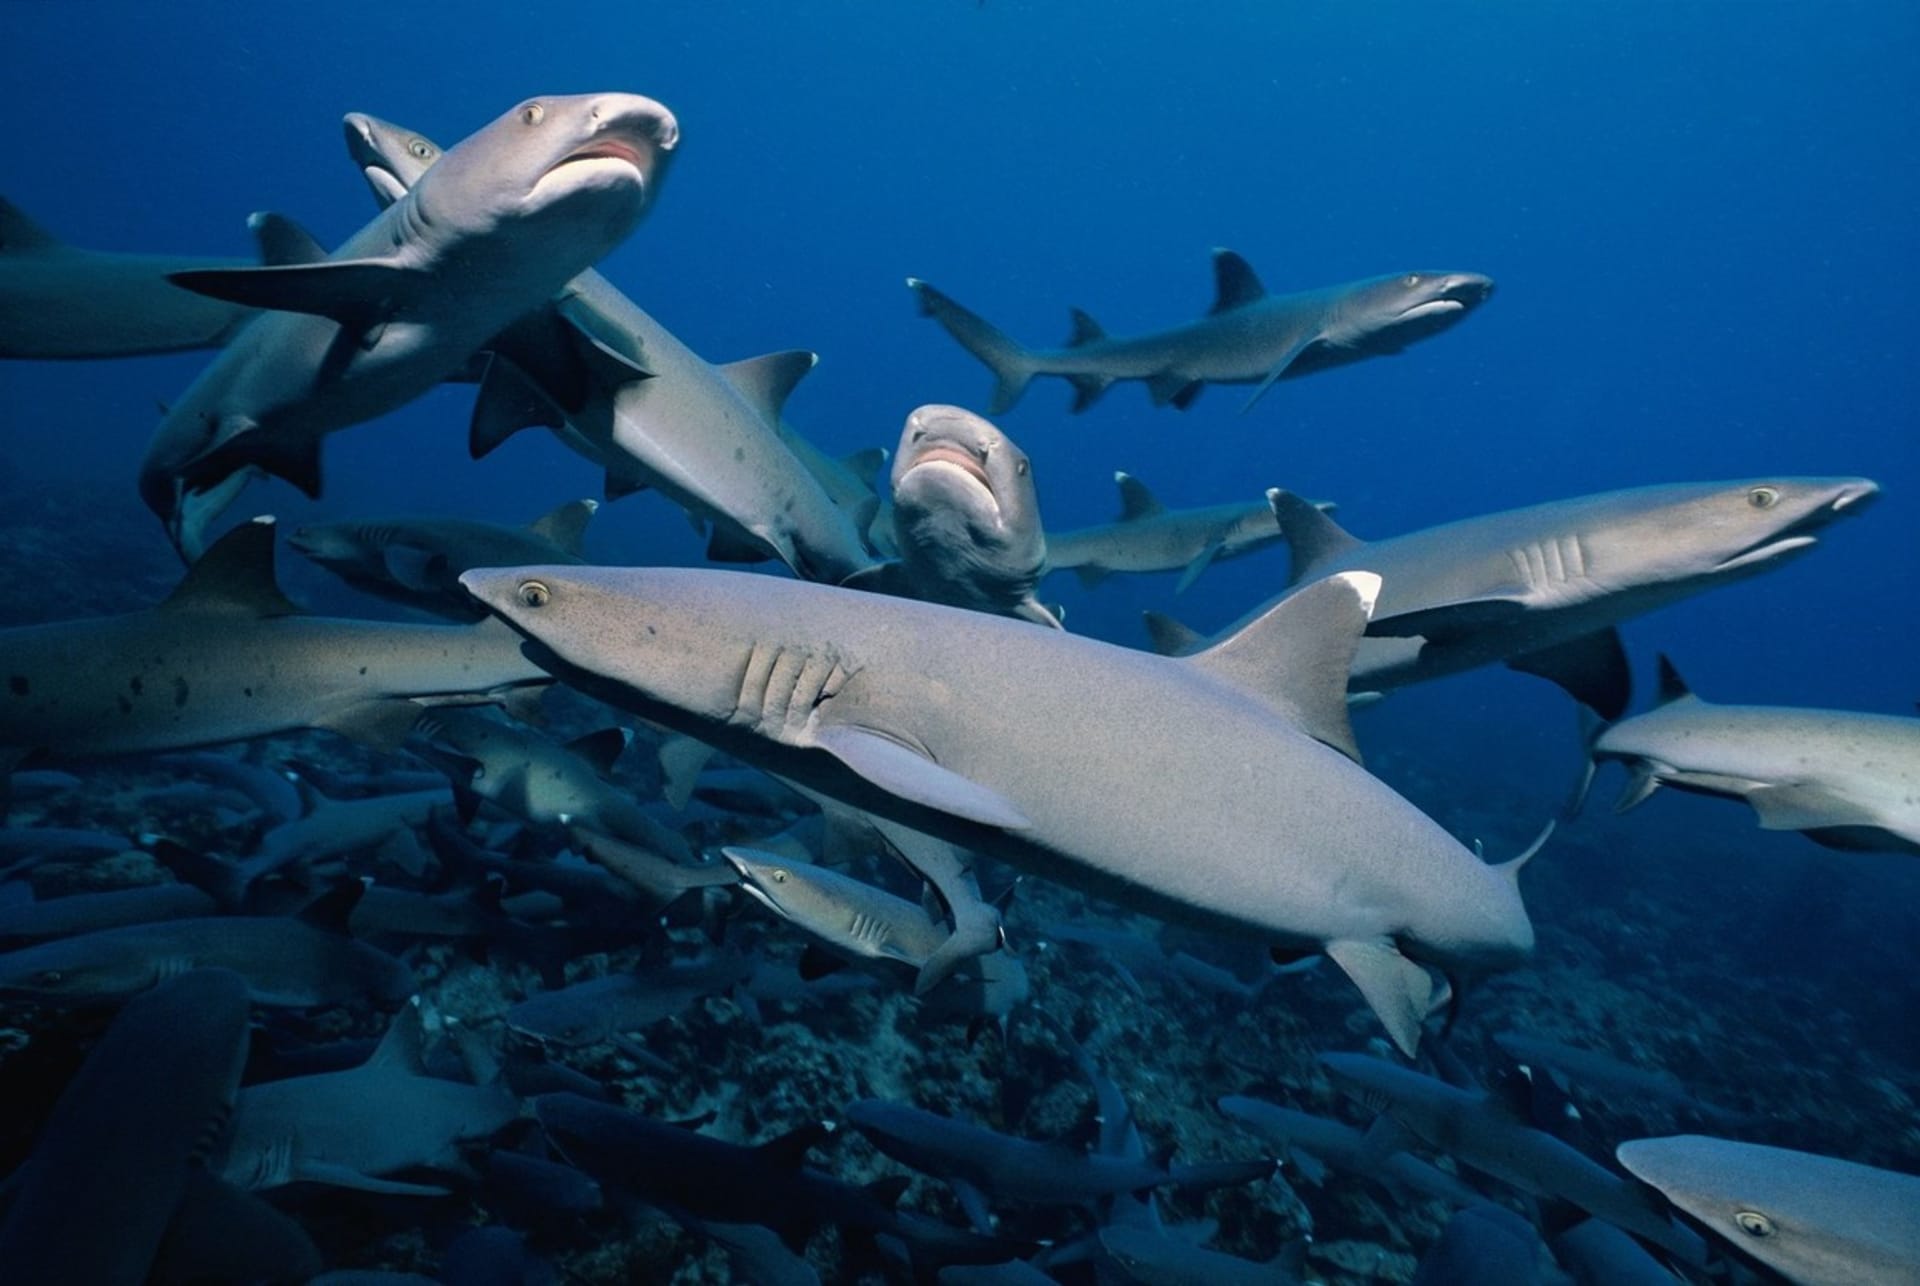 Žralok lagunový loví ve skupině